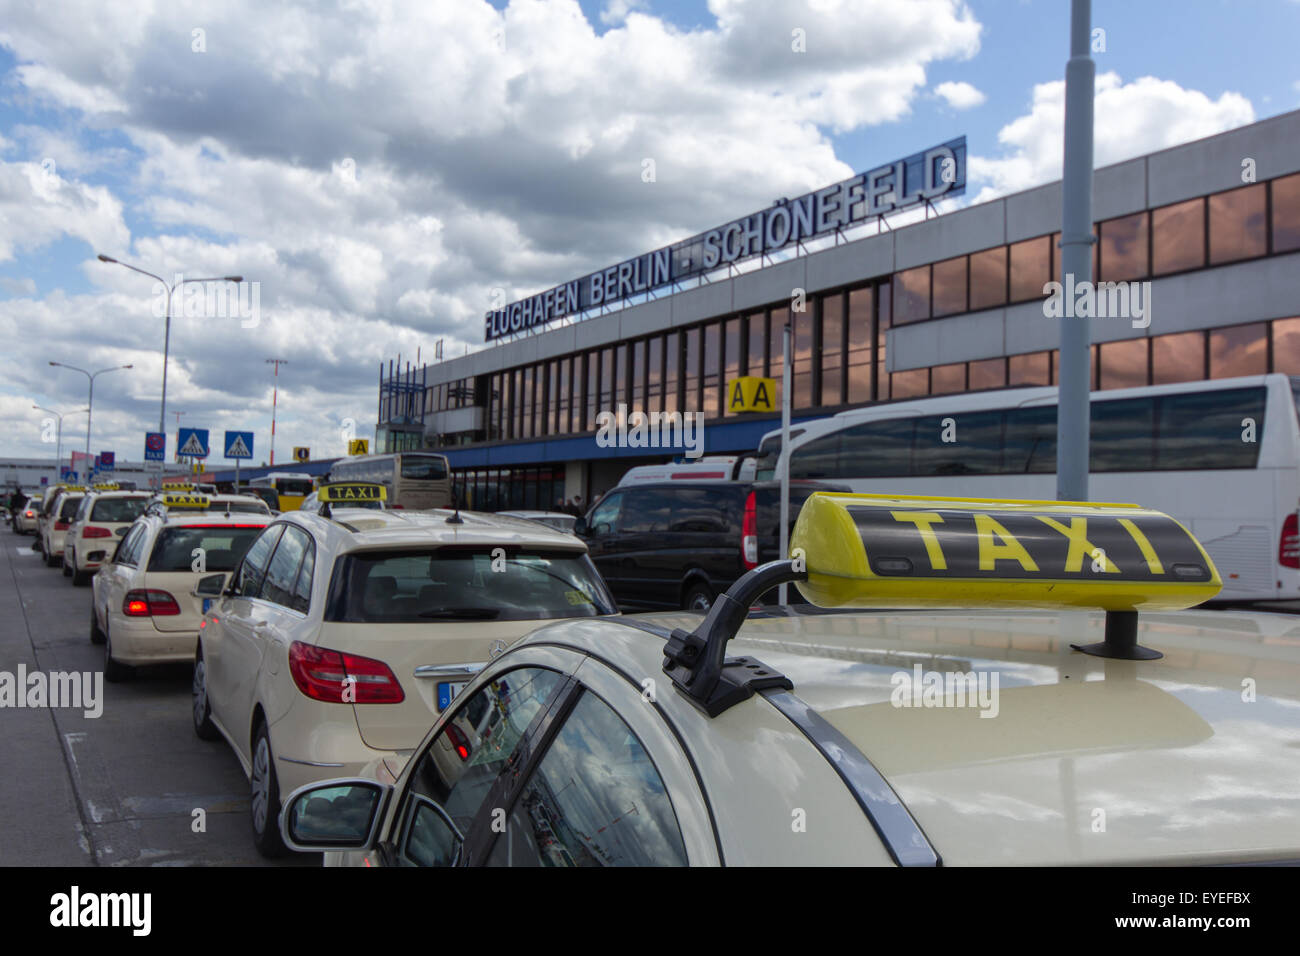 Les voitures de taxi en attente à l'aéroport international Berlin Schoenefeld Banque D'Images